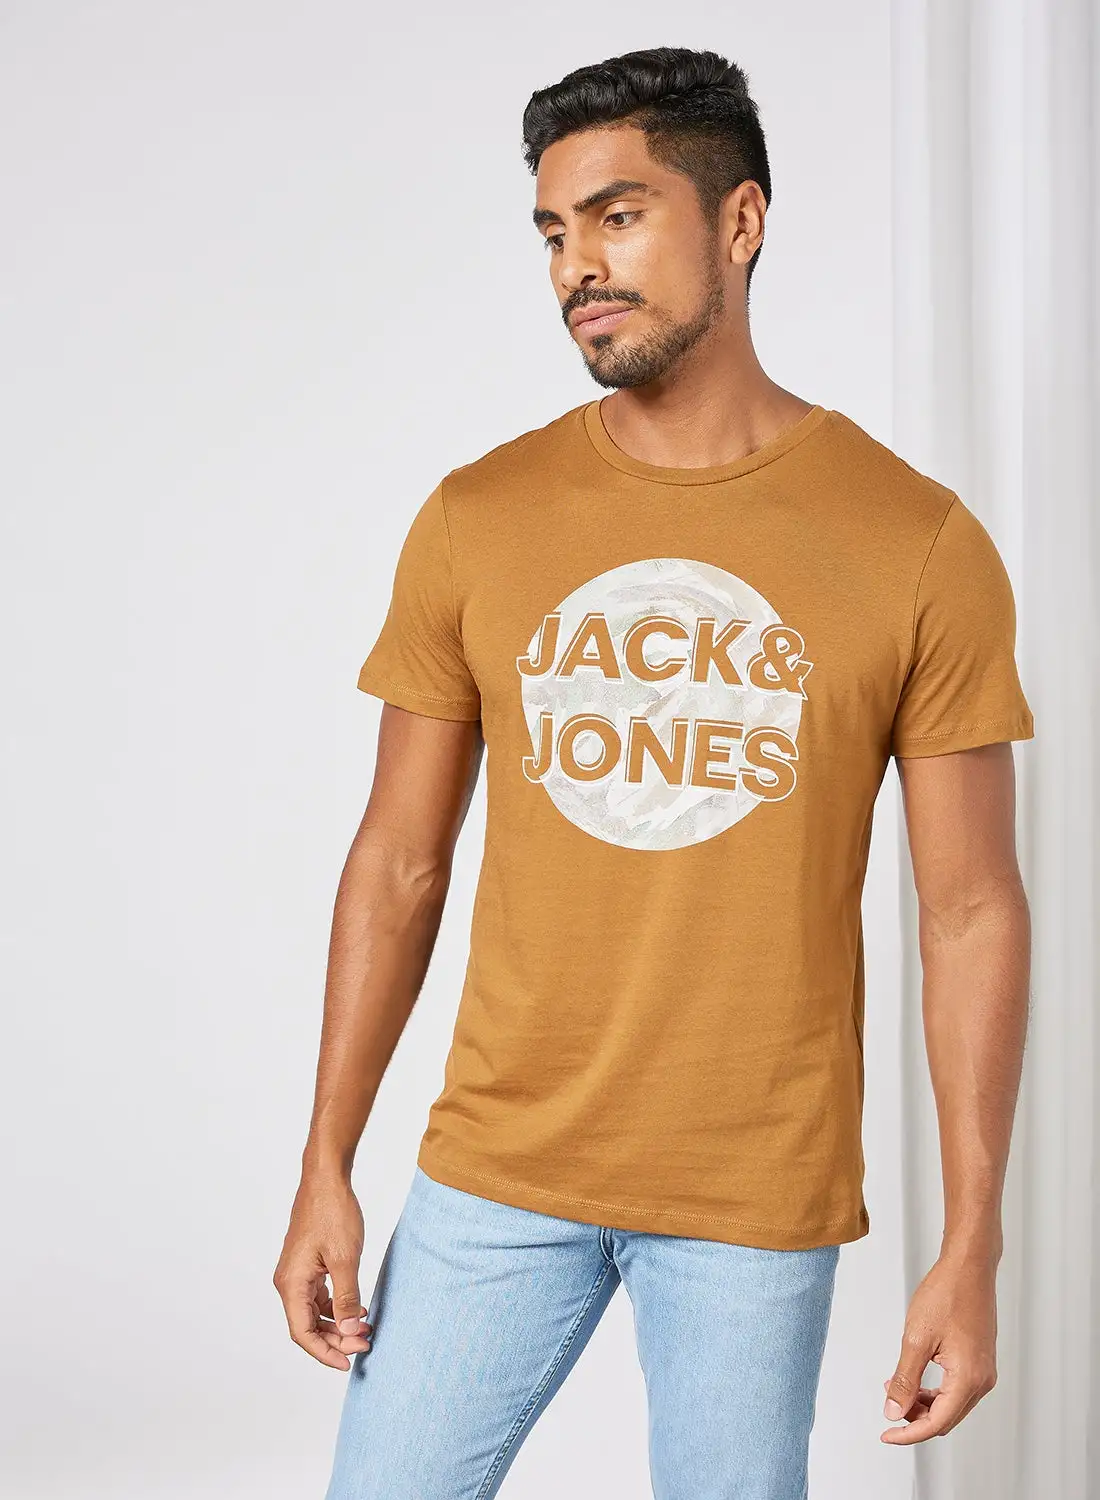 JACK & JONES Signature T-Shirt بني